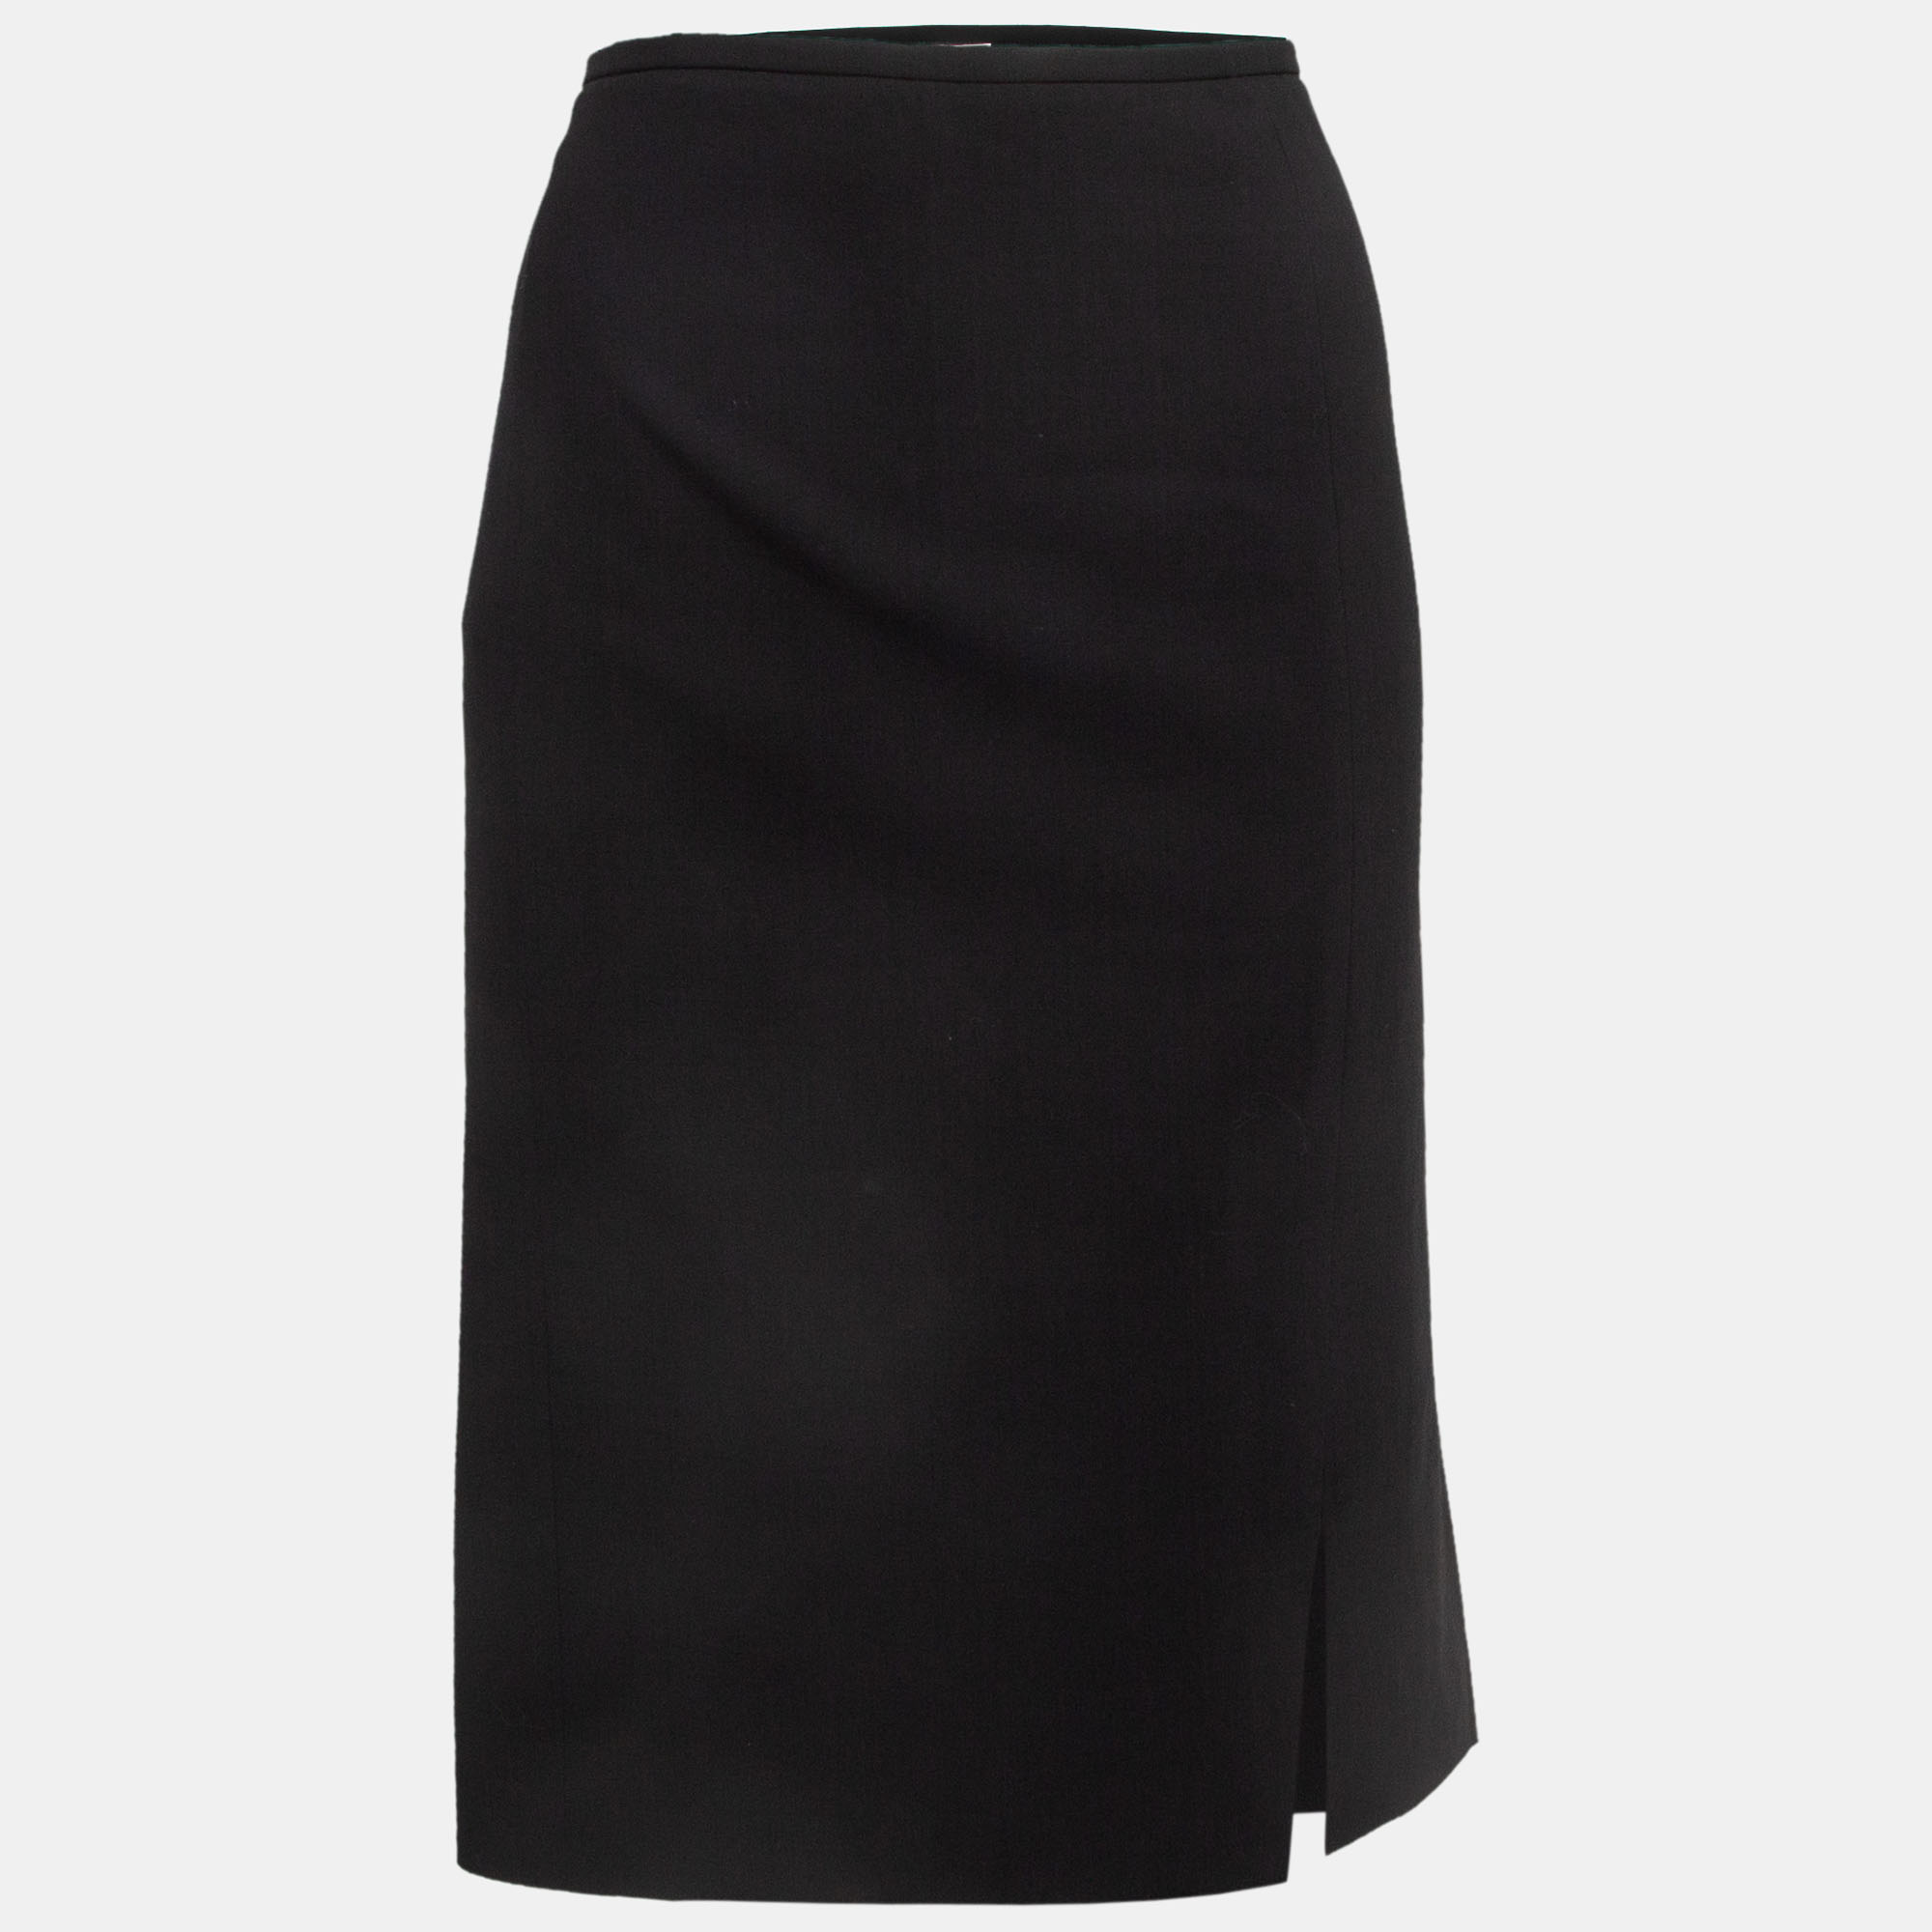 Armani collezioni black crepe formal pencil skirt xl